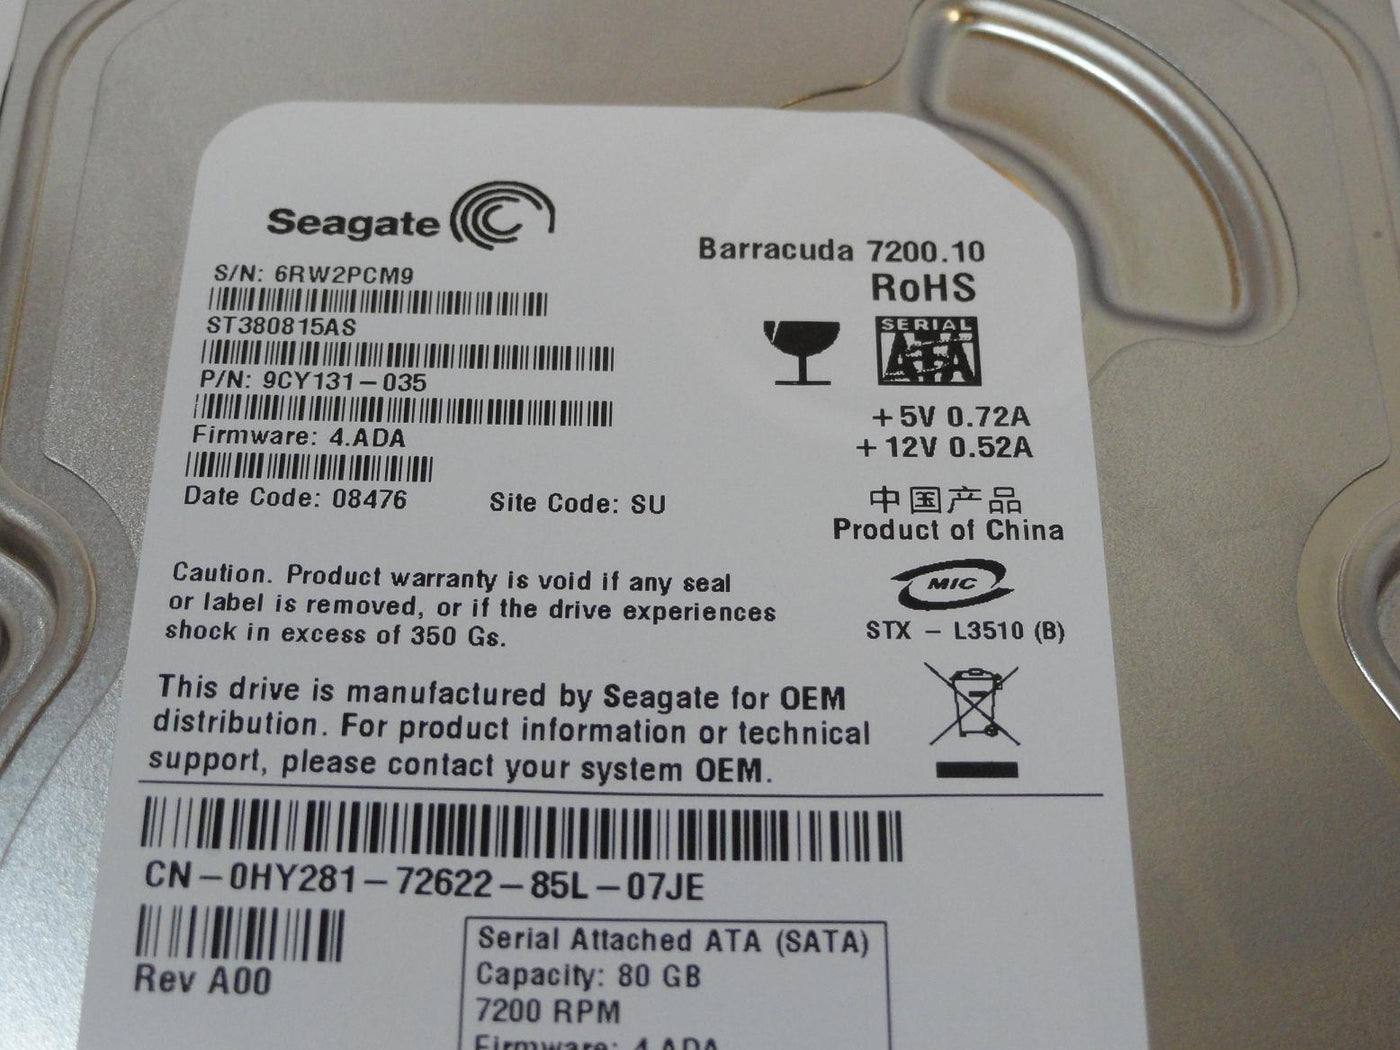 PR12888_9CY131-035_Seagate Dell 80GB SATA 7200rpm 3.5in HDD - Image3